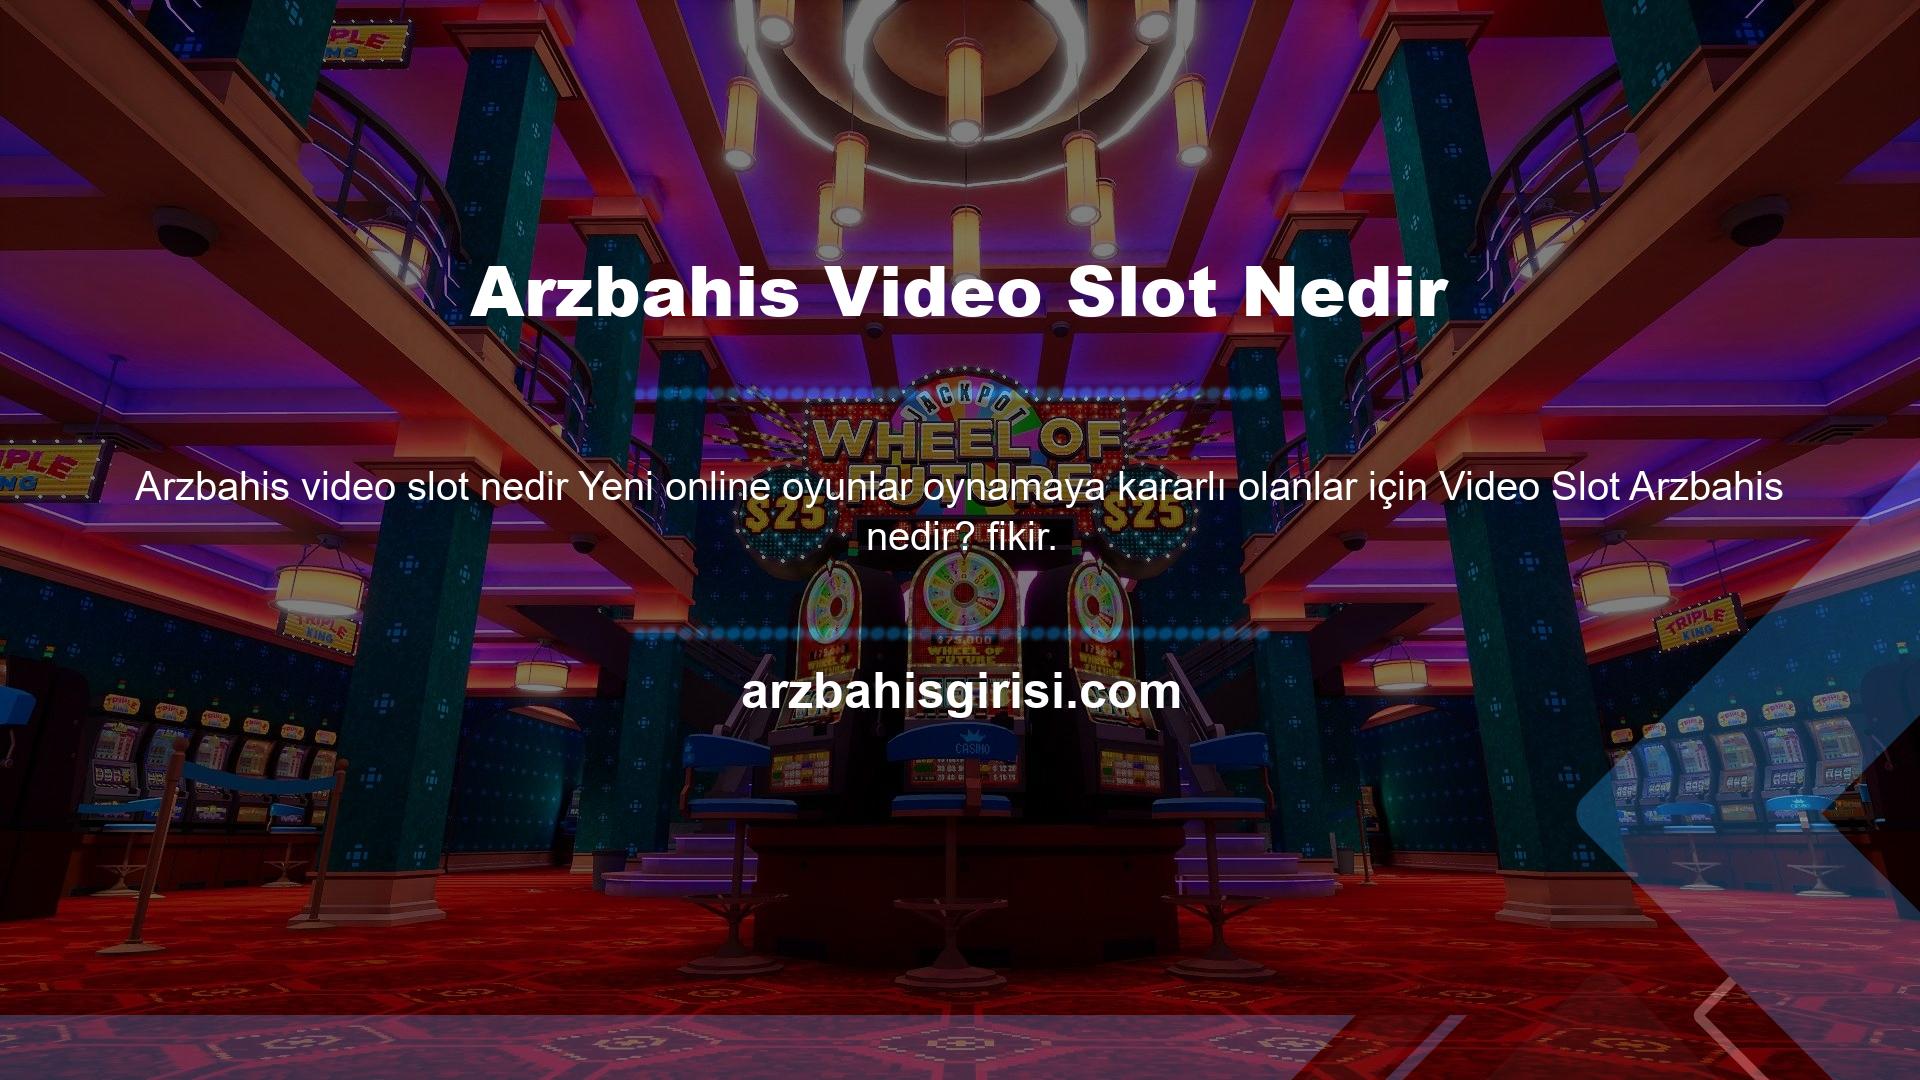 Arzbahis, Avrupa merkezli bir Arzbahis lisanslı oyun sitesidir